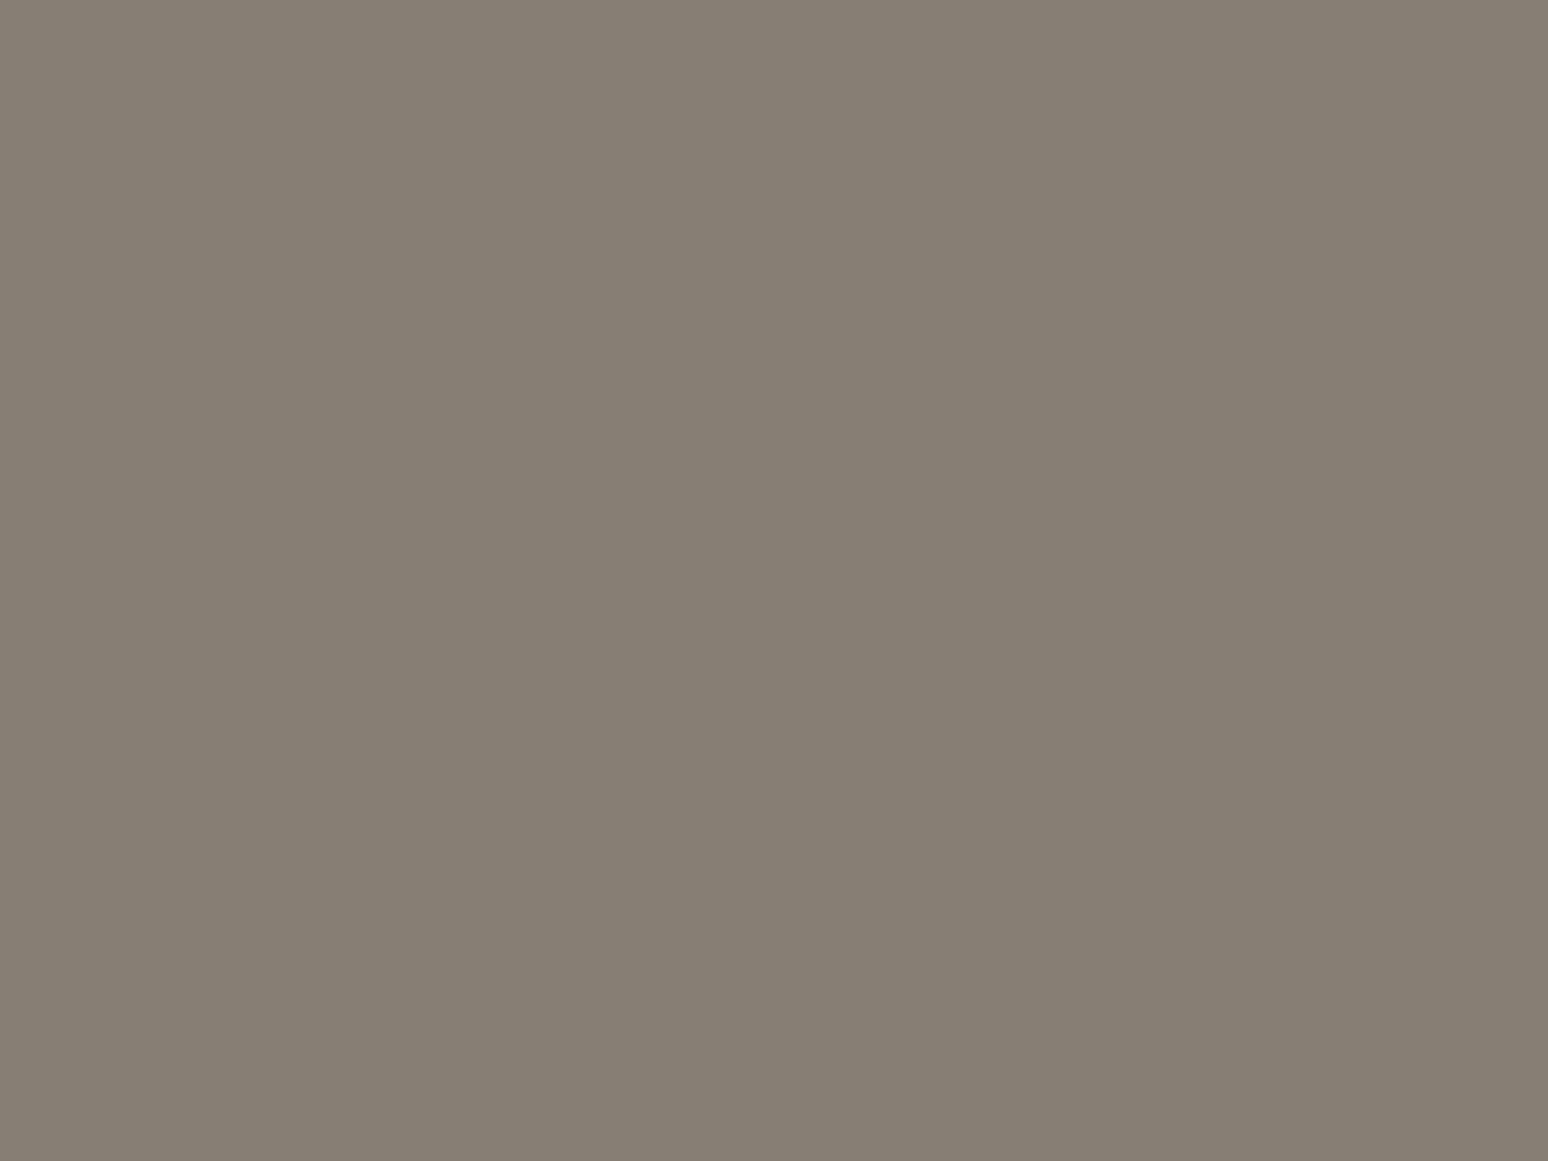 Василий Ушаков. В антракте (фрагмент). Из серии «Филармония». 1964. Музей «Царскосельская коллекция», Санкт-Петербург